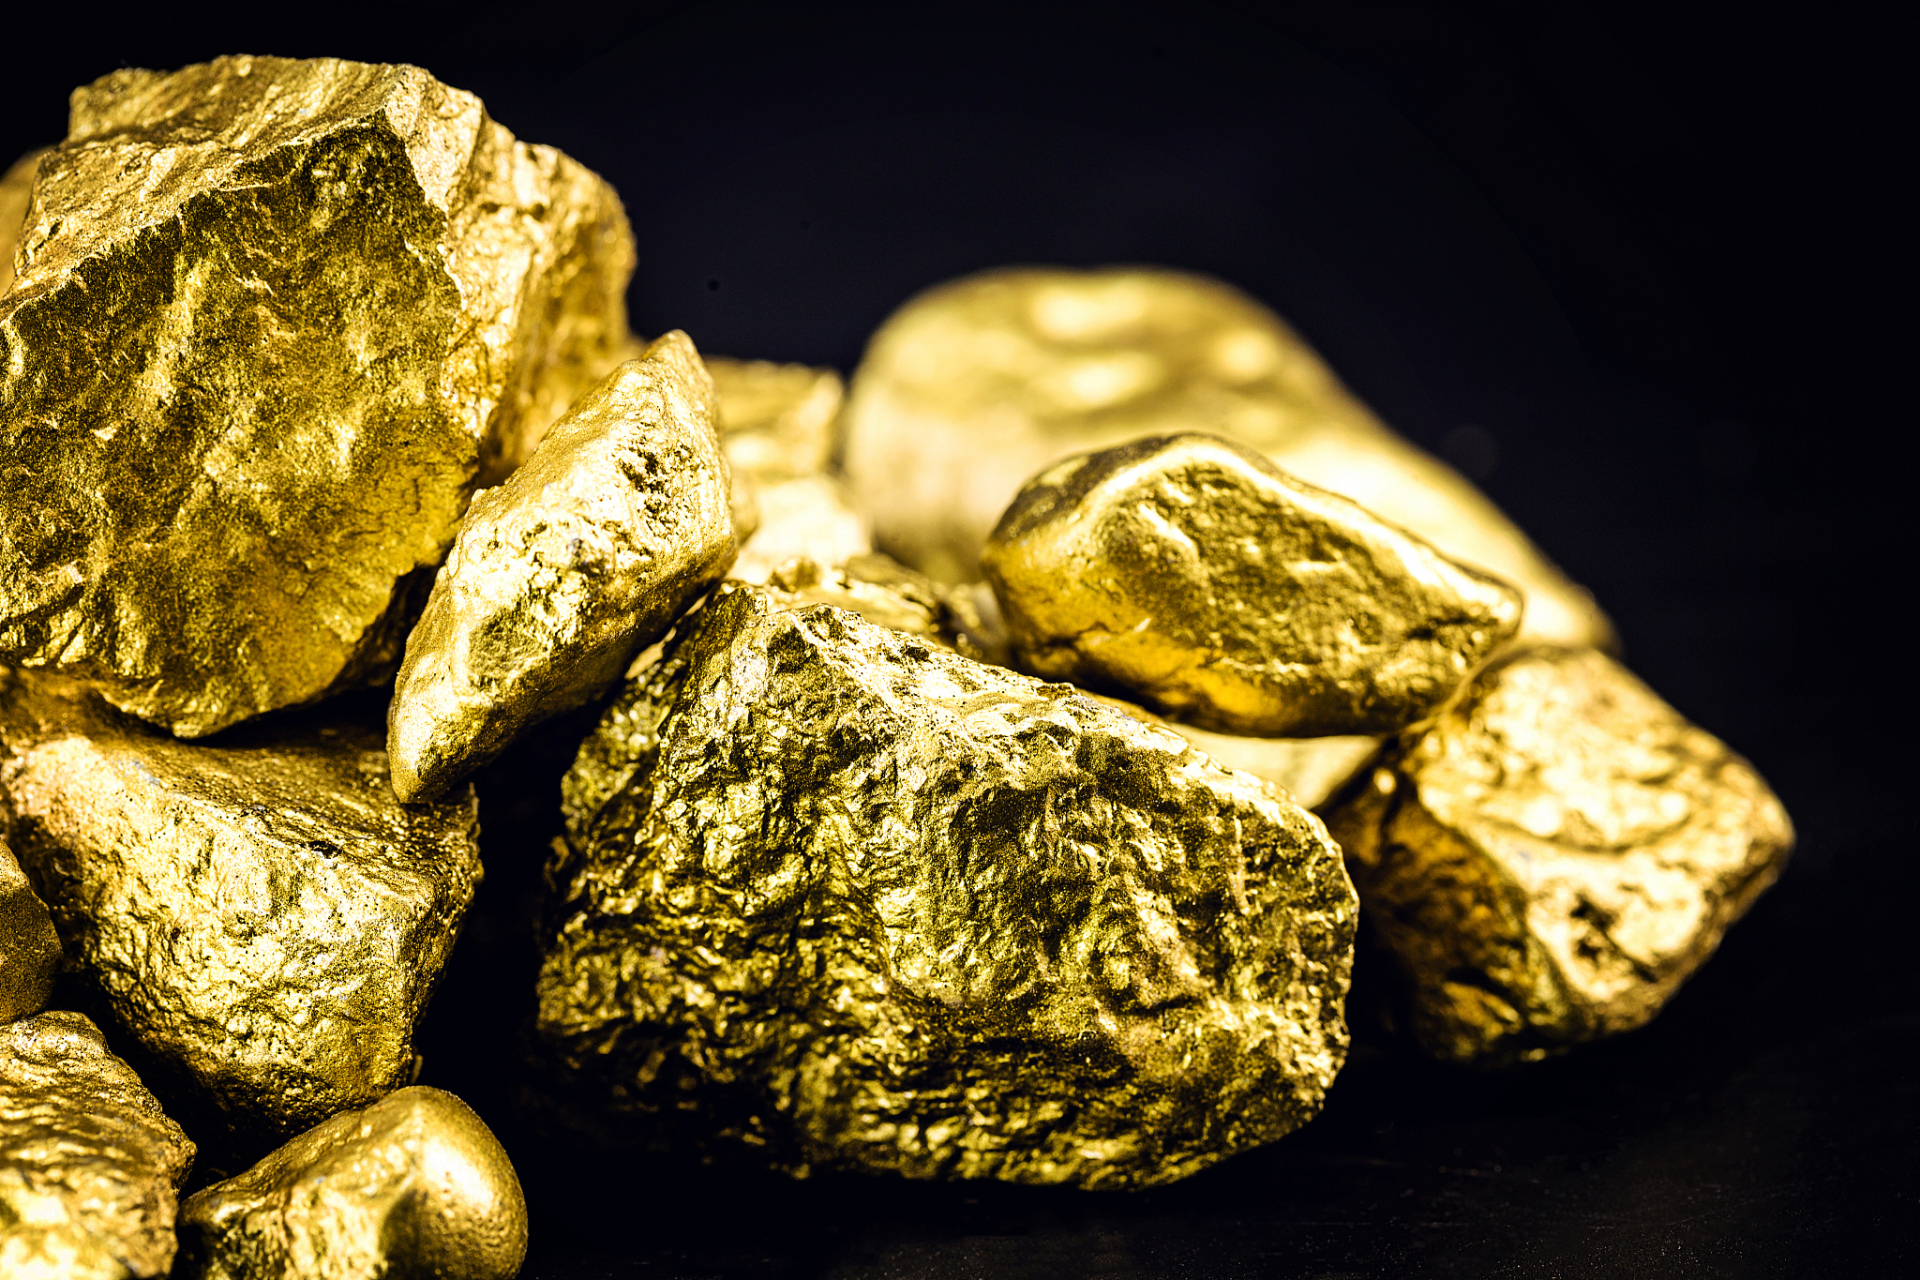 根据最新的报道,山东省发现了一处世界级别的巨型单体金矿床